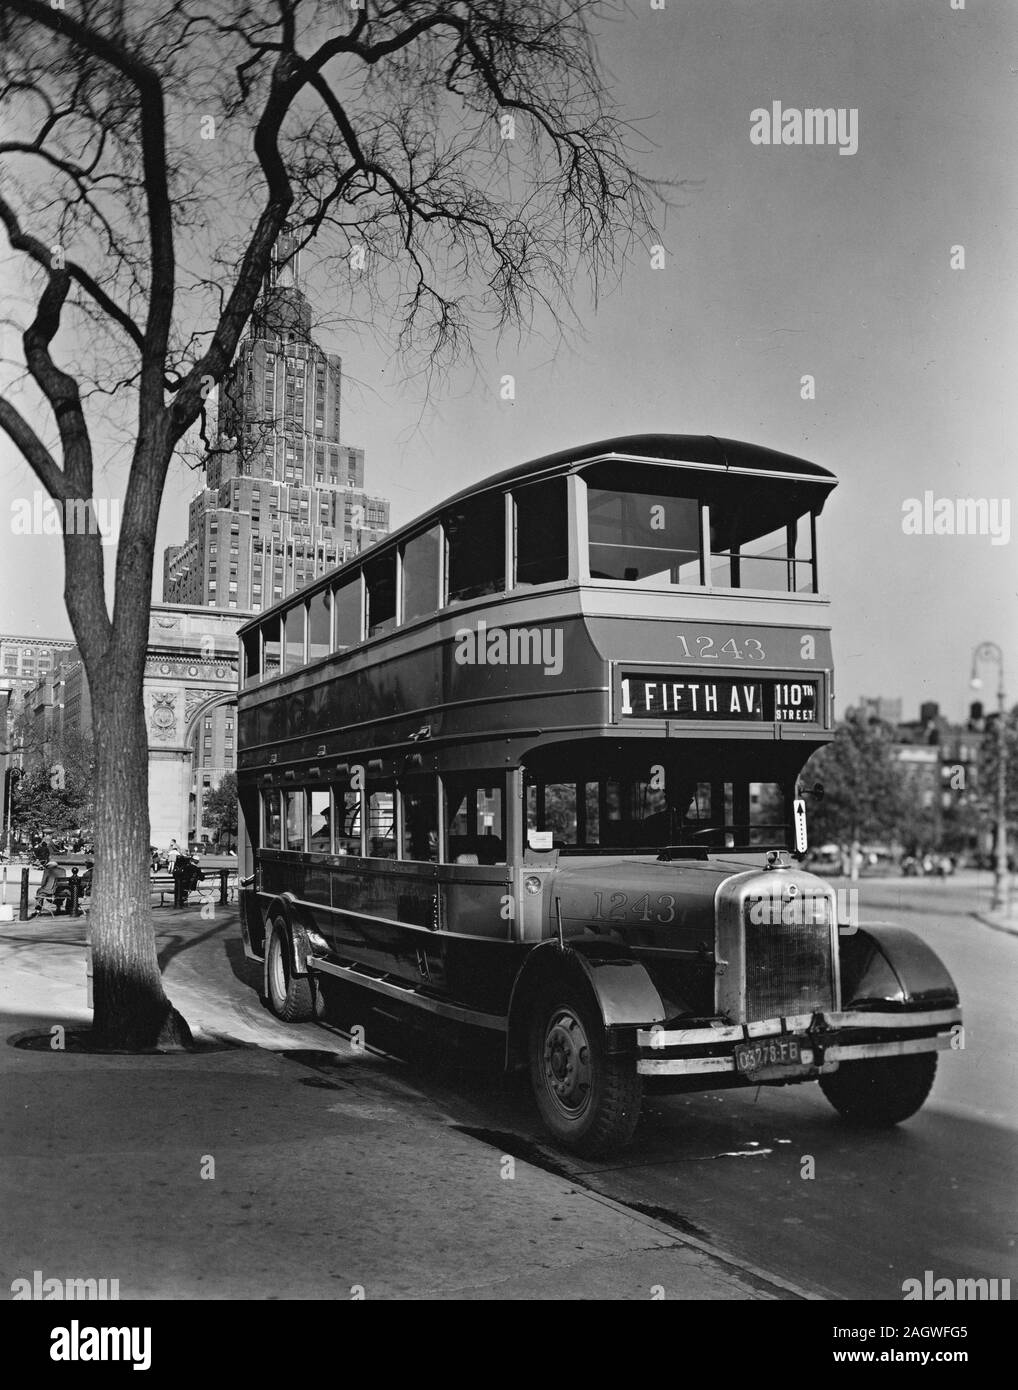 Doppeldecker Bus geparkt von Baum in Washington Square, der Bogen und 1 Fifth Avenue (Apartments) sichtbar. Stockfoto